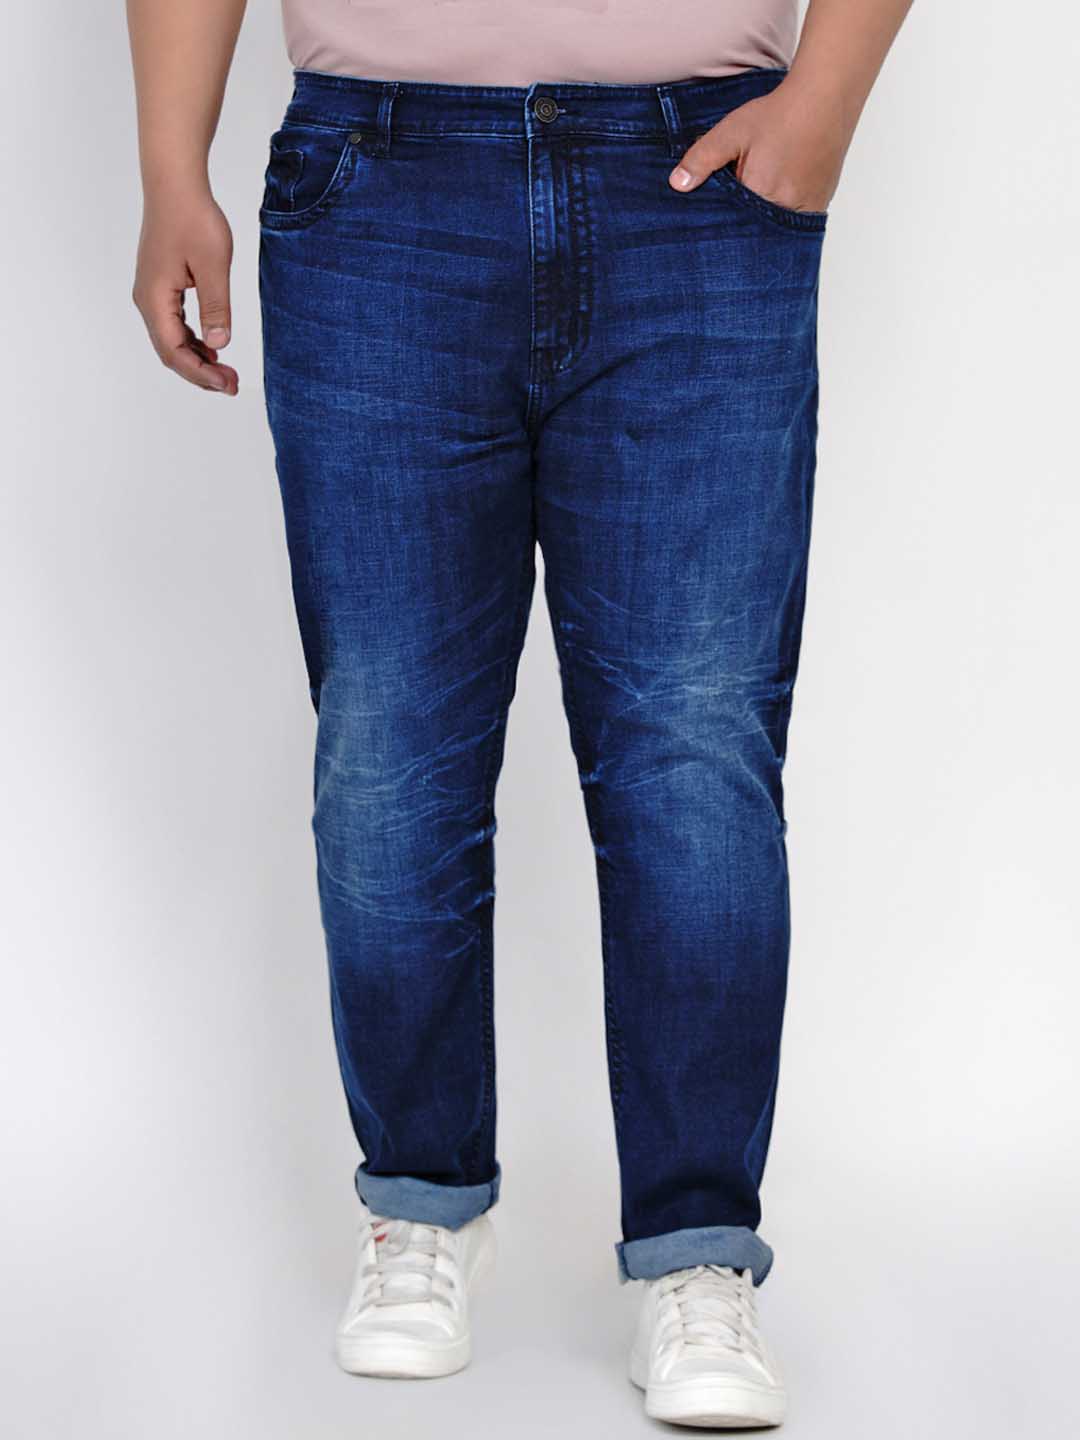 bottomwear/jeans/JPJ12130/jpj12130-1.jpg